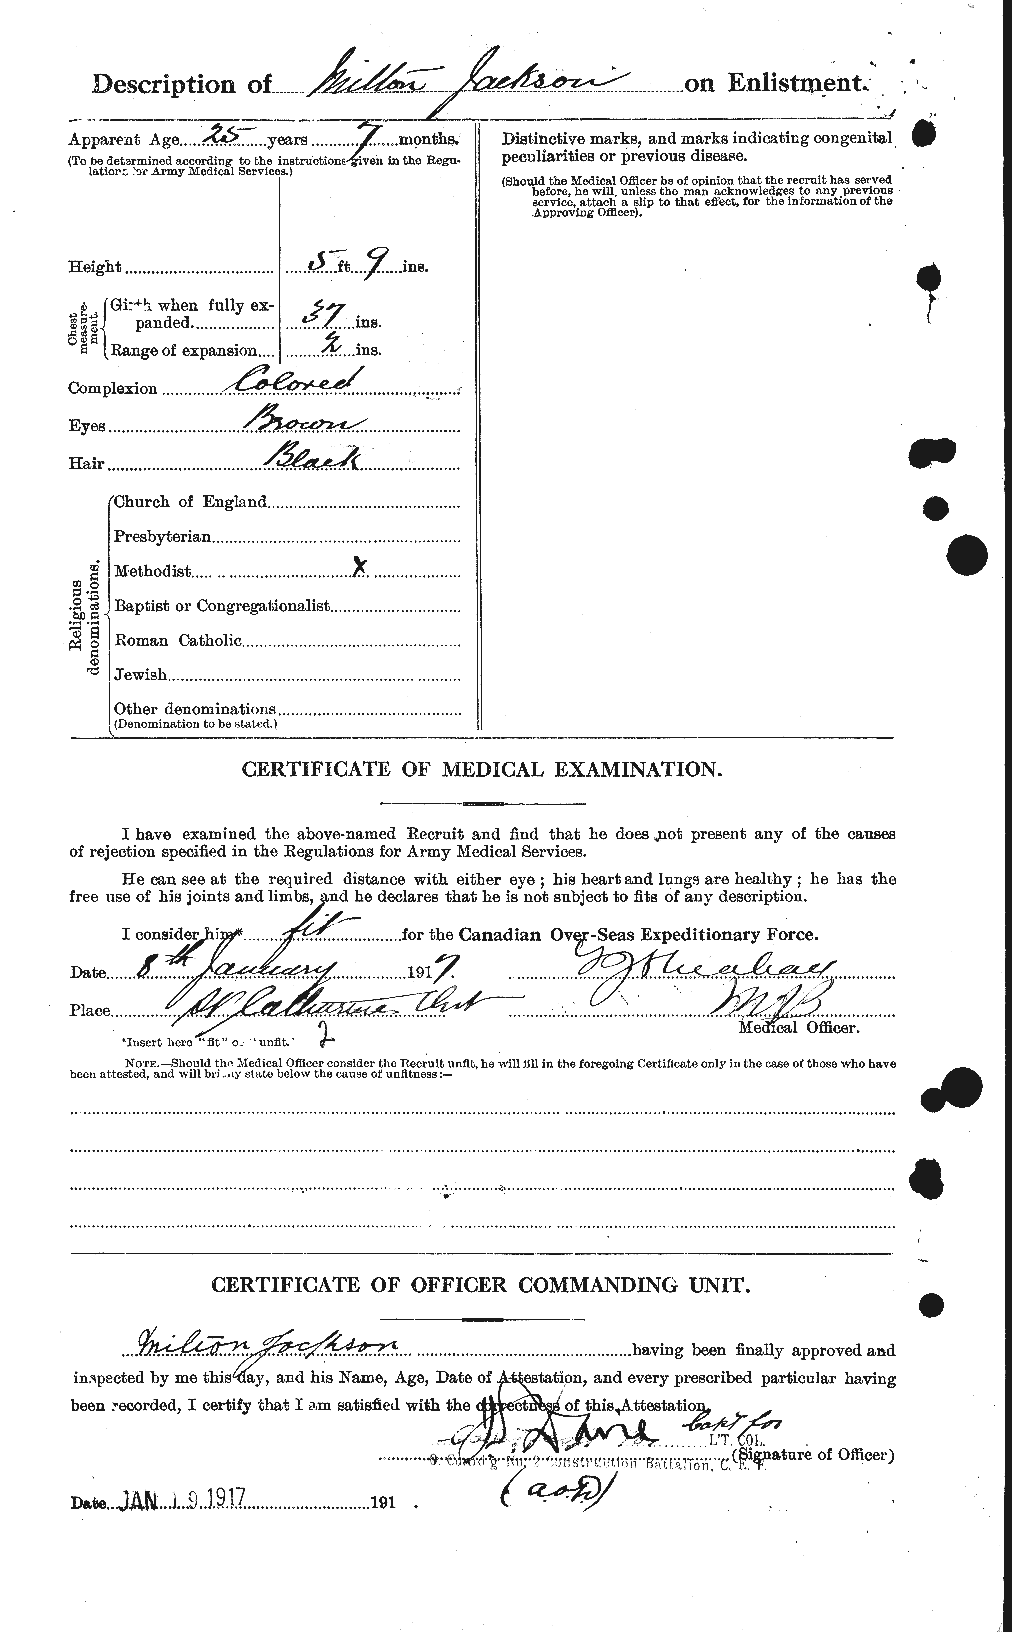 Dossiers du Personnel de la Première Guerre mondiale - CEC 414432b